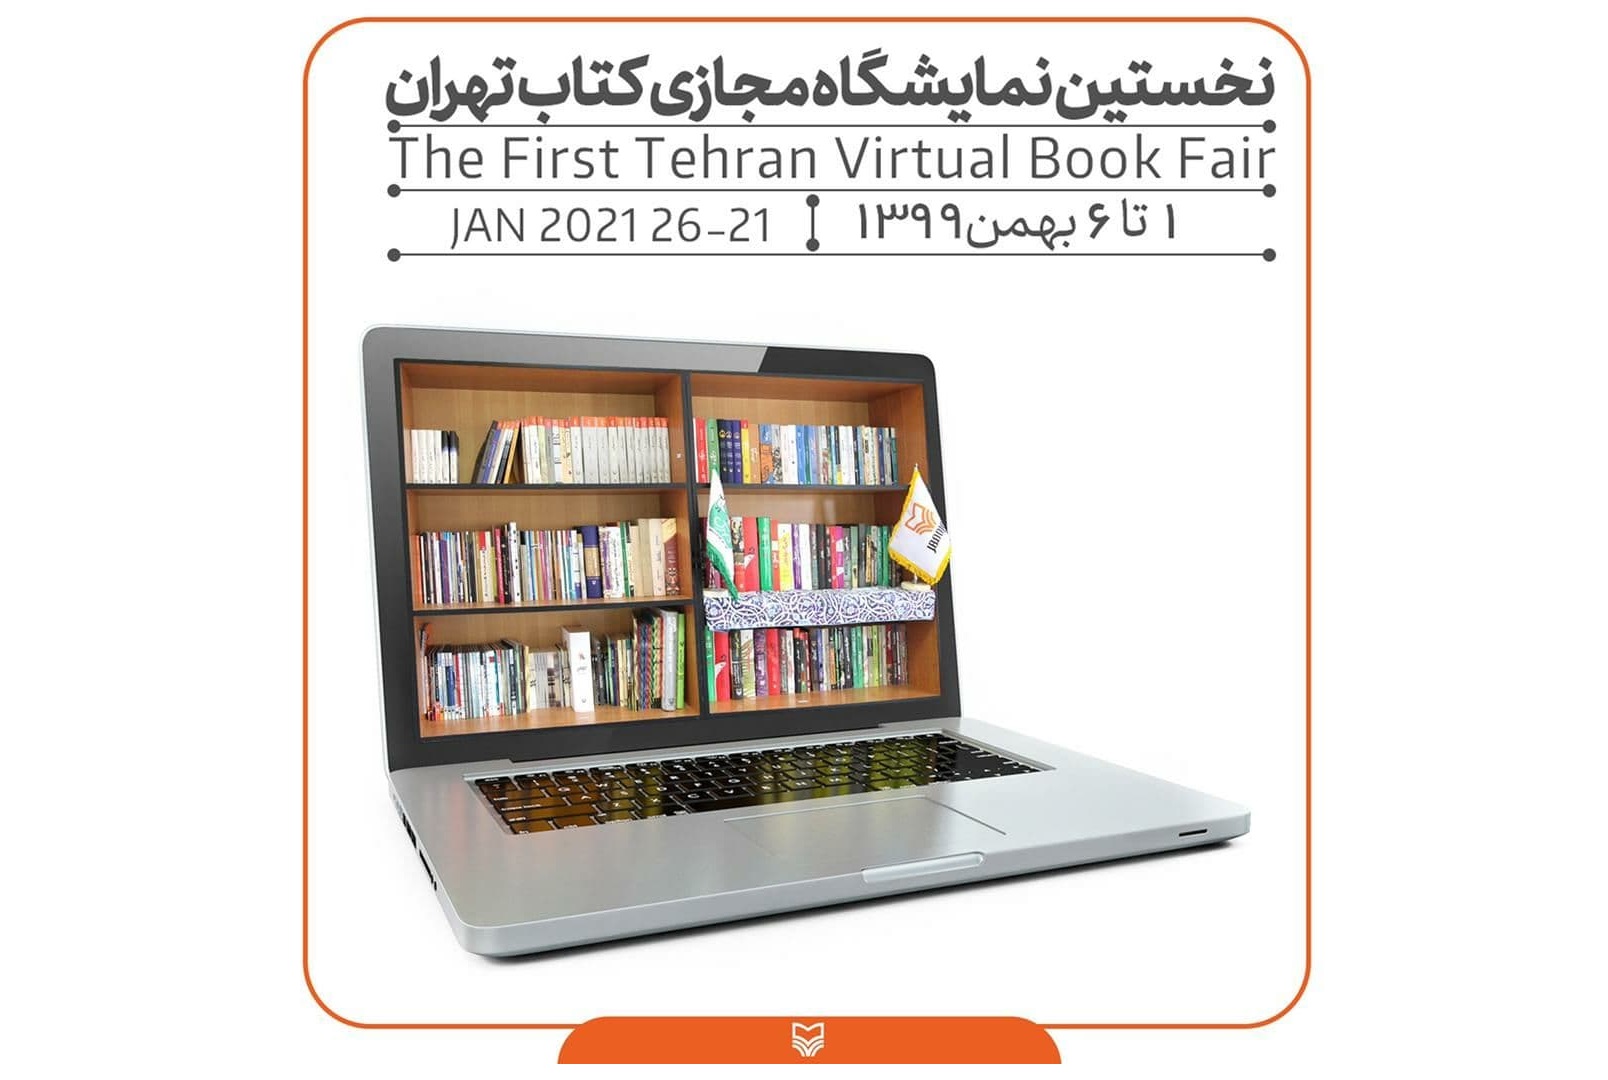 سوره مهر با 1300 عنوان کتاب در نخستین نمایشگاه مجازی کتاب تهران